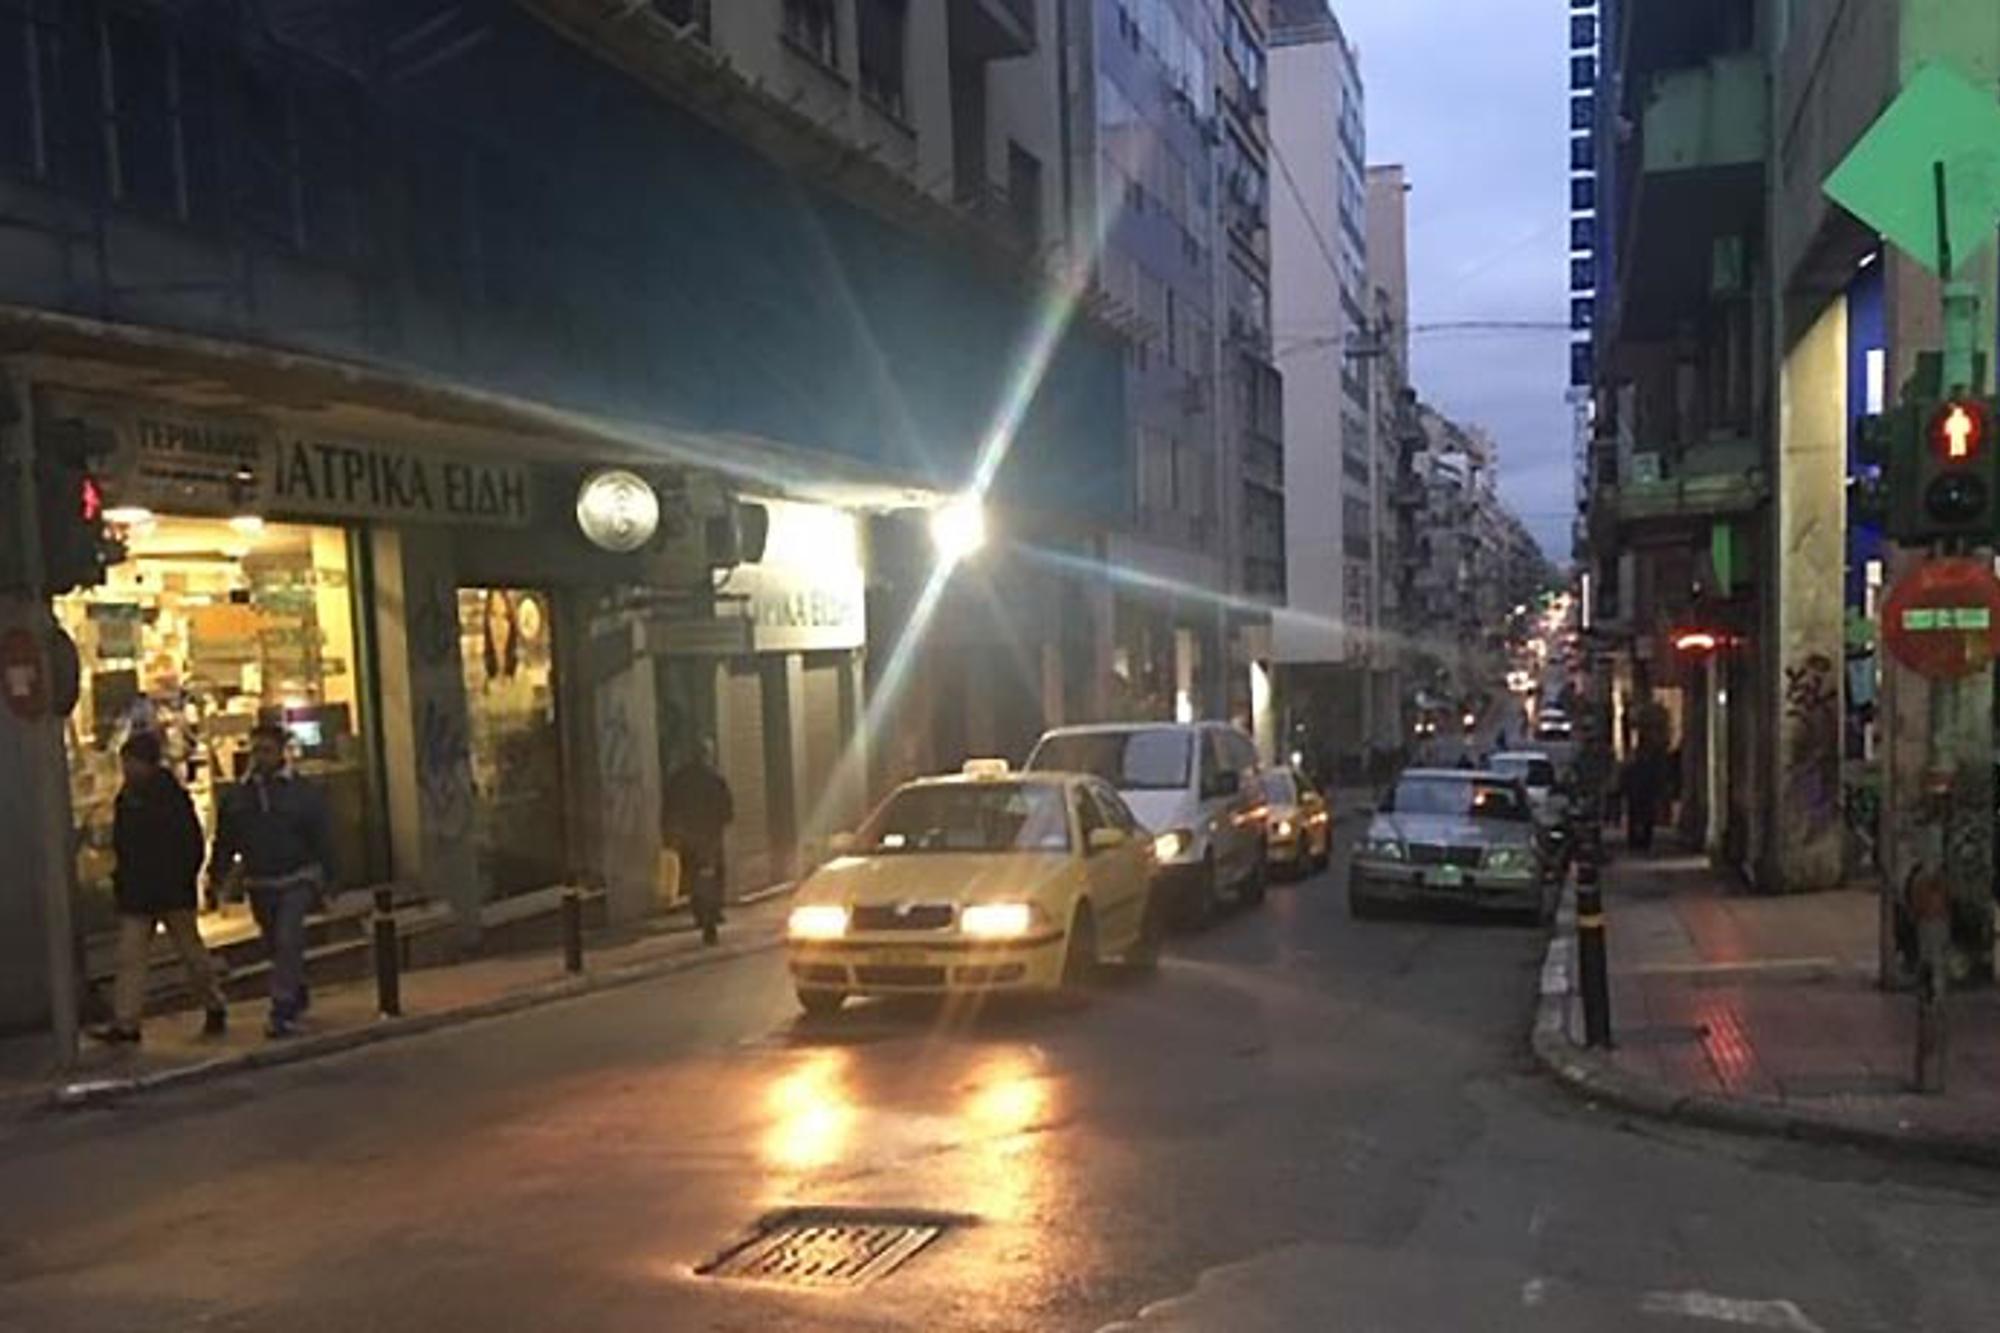 Det tuffa kvarteret Omonia i Aten, där bilar kommer åkandes på en bilväg. Till vänster och höger om bilvägen går det människor på gatorna.